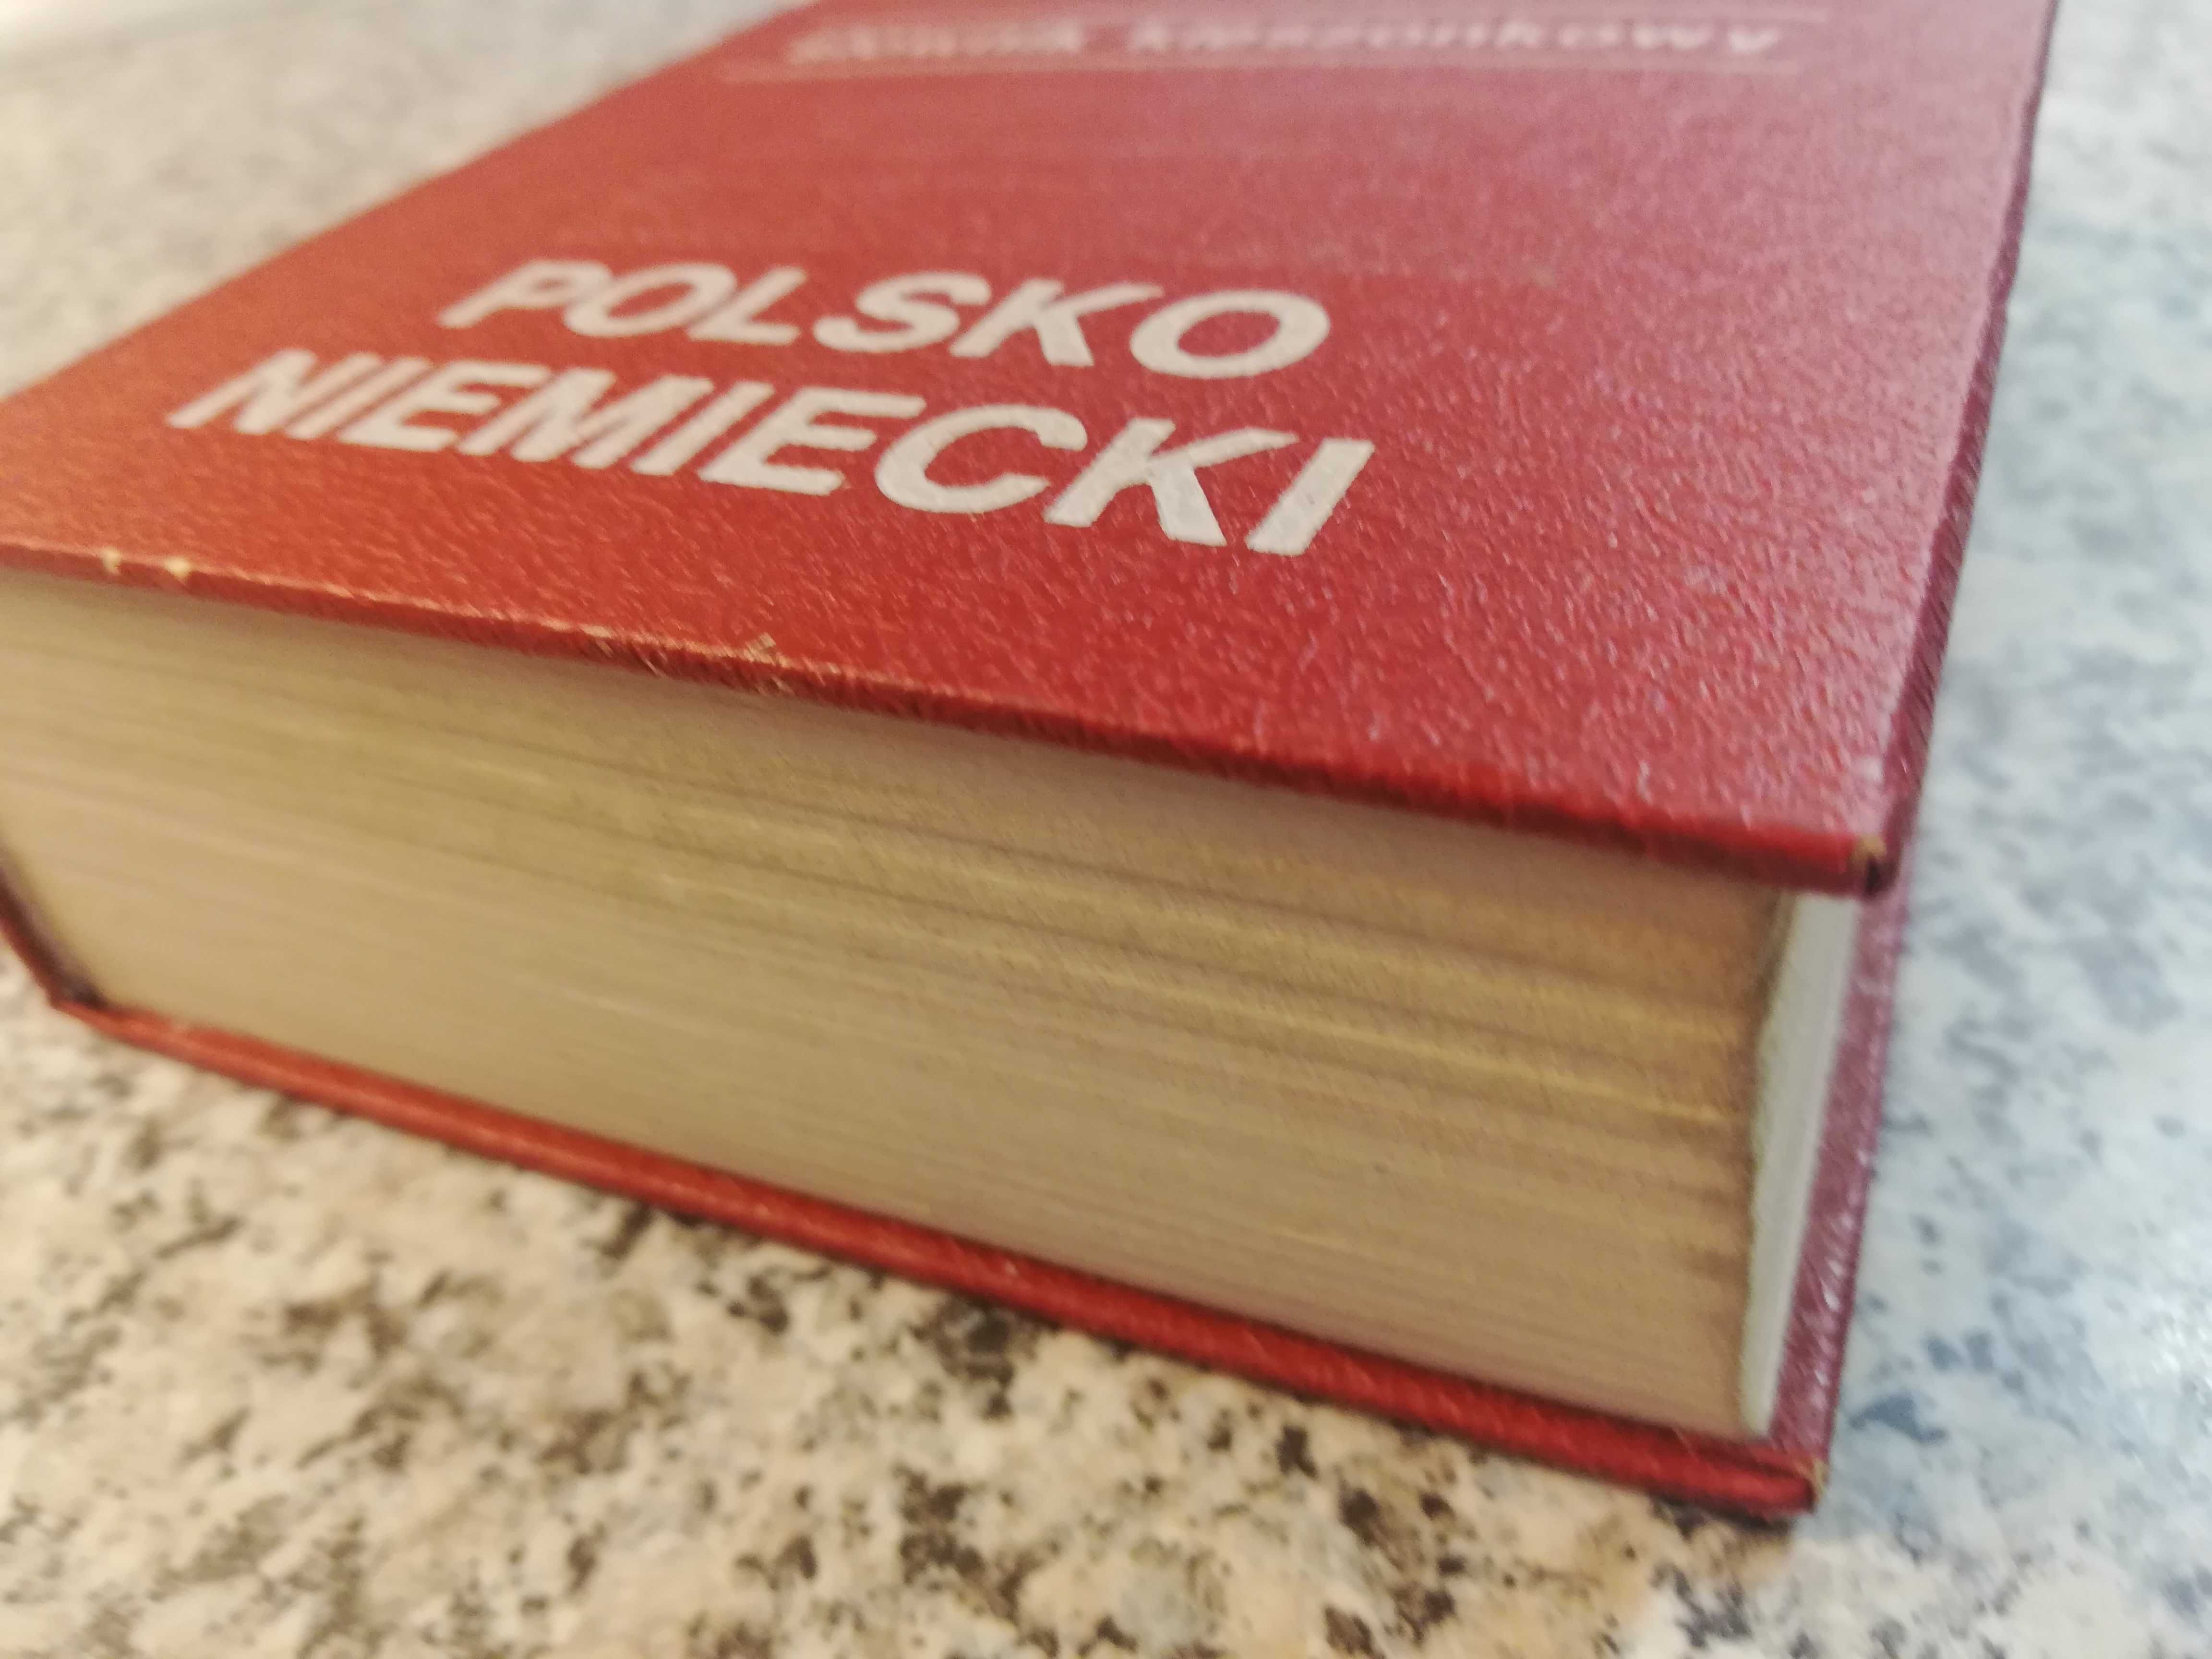 Słownik kieszonkowy niemiecko polski / polsko niemiecki